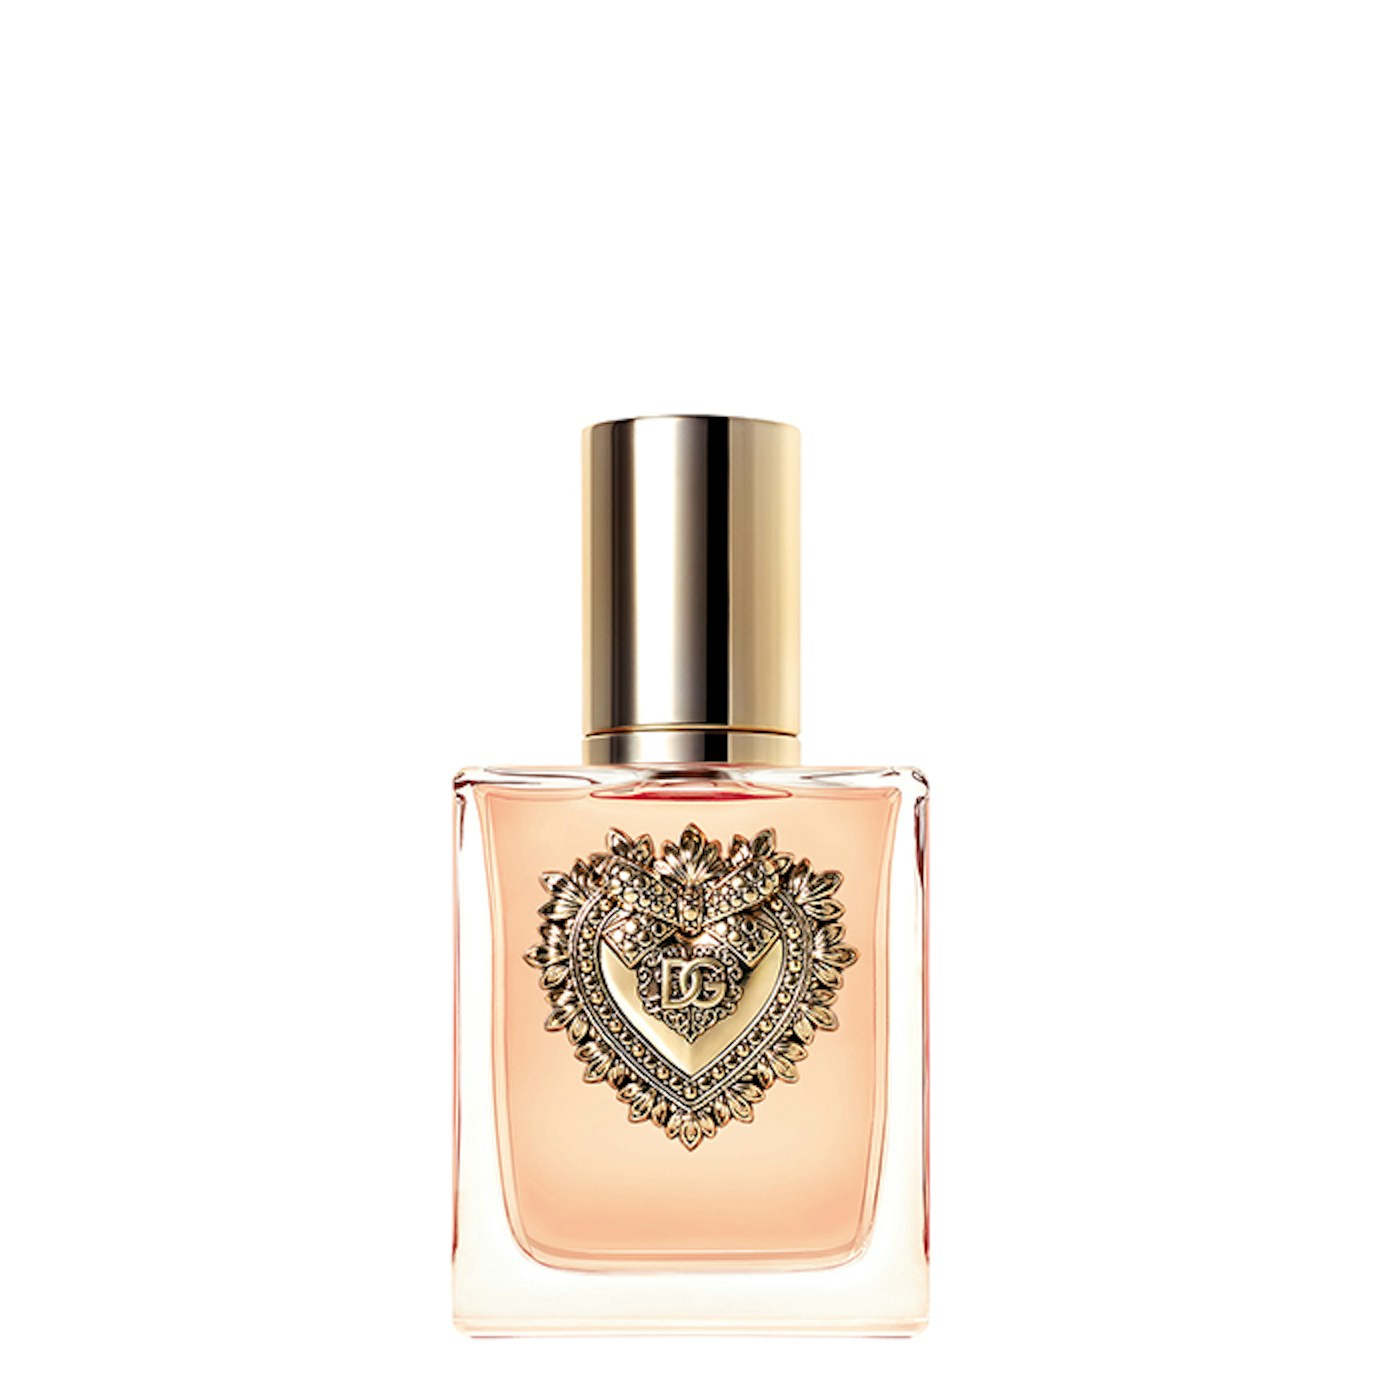 Dolce & Gabbana Devotion Eau De Parfum 50ml Spray | The Fragrance Shop